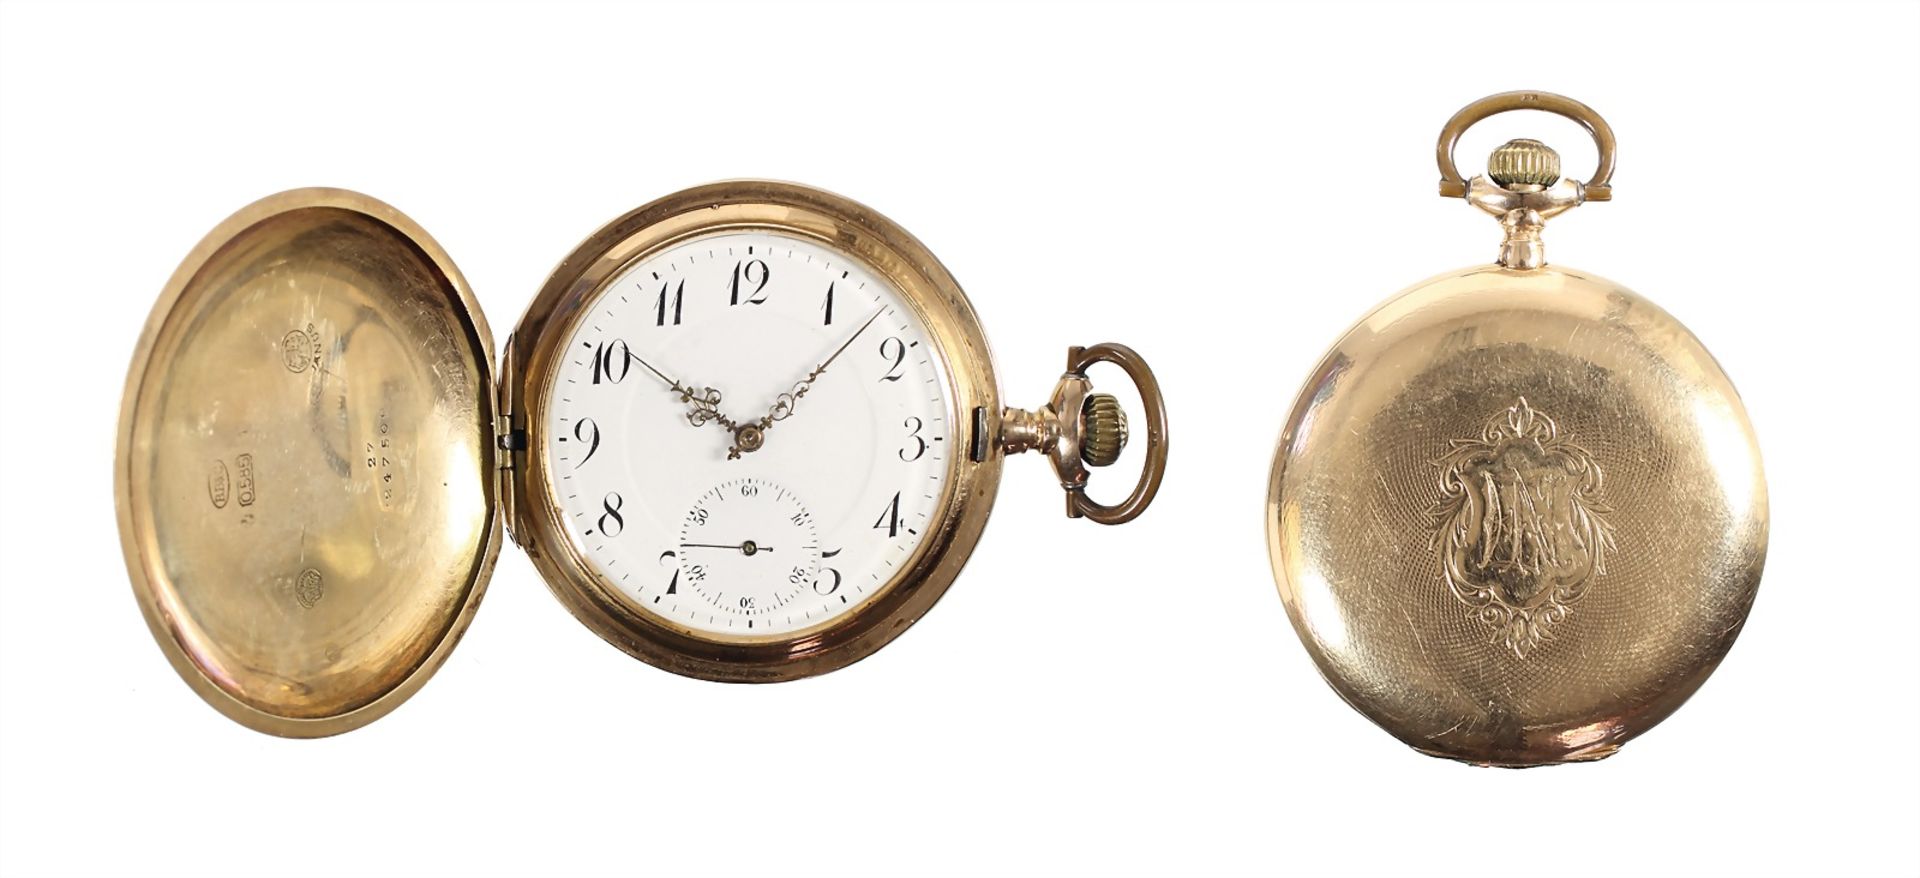 men's fob watch, Switzerland around 1900, yelow gold 585/000, JANUS, signed: B. B & C, very good